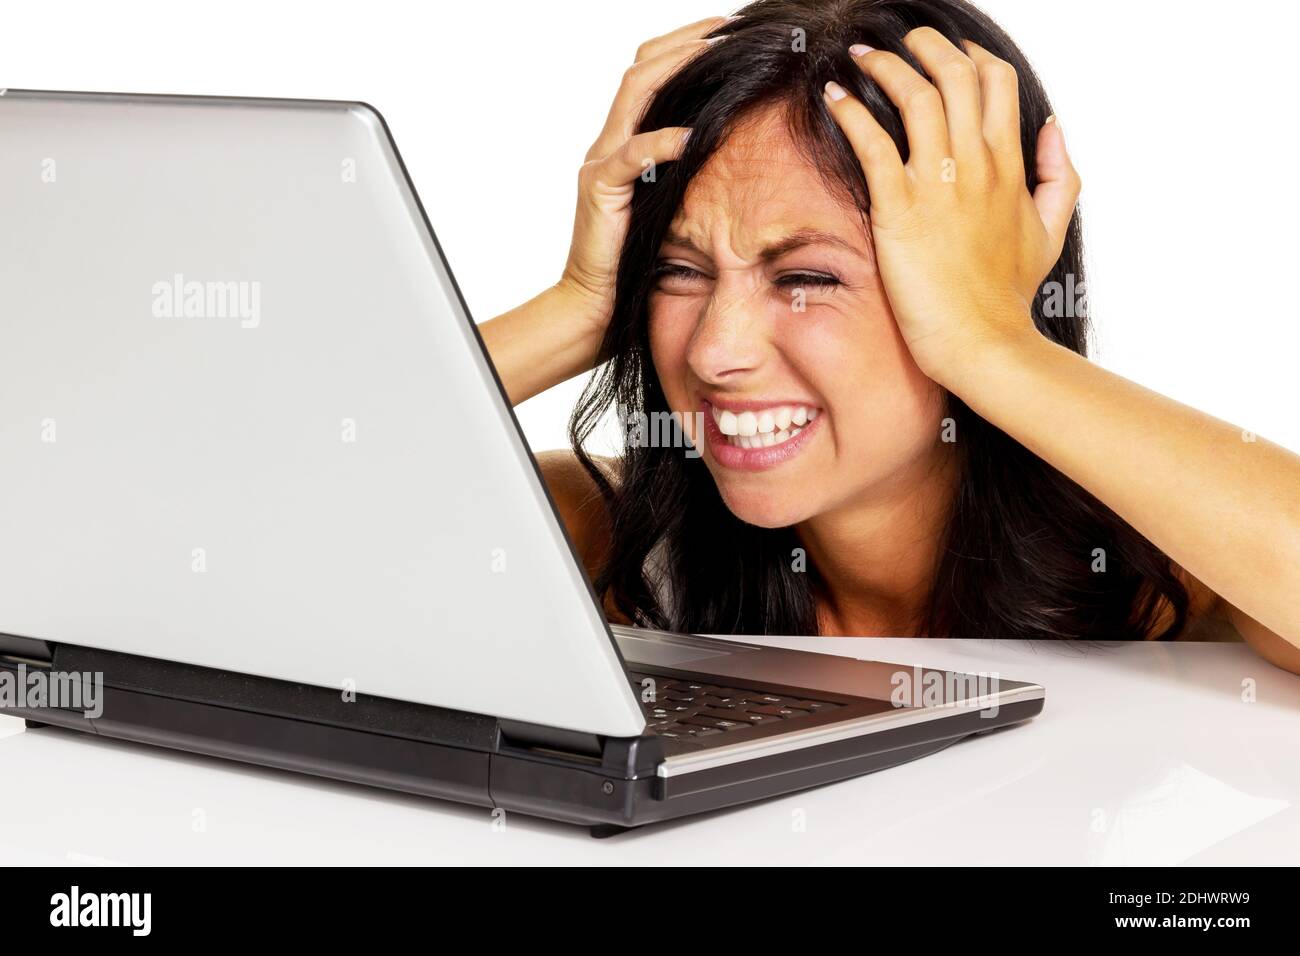 Junge Frau mit Laptop ist verzweifelt, fehlende Computer Kenntnisse, Stock Photo